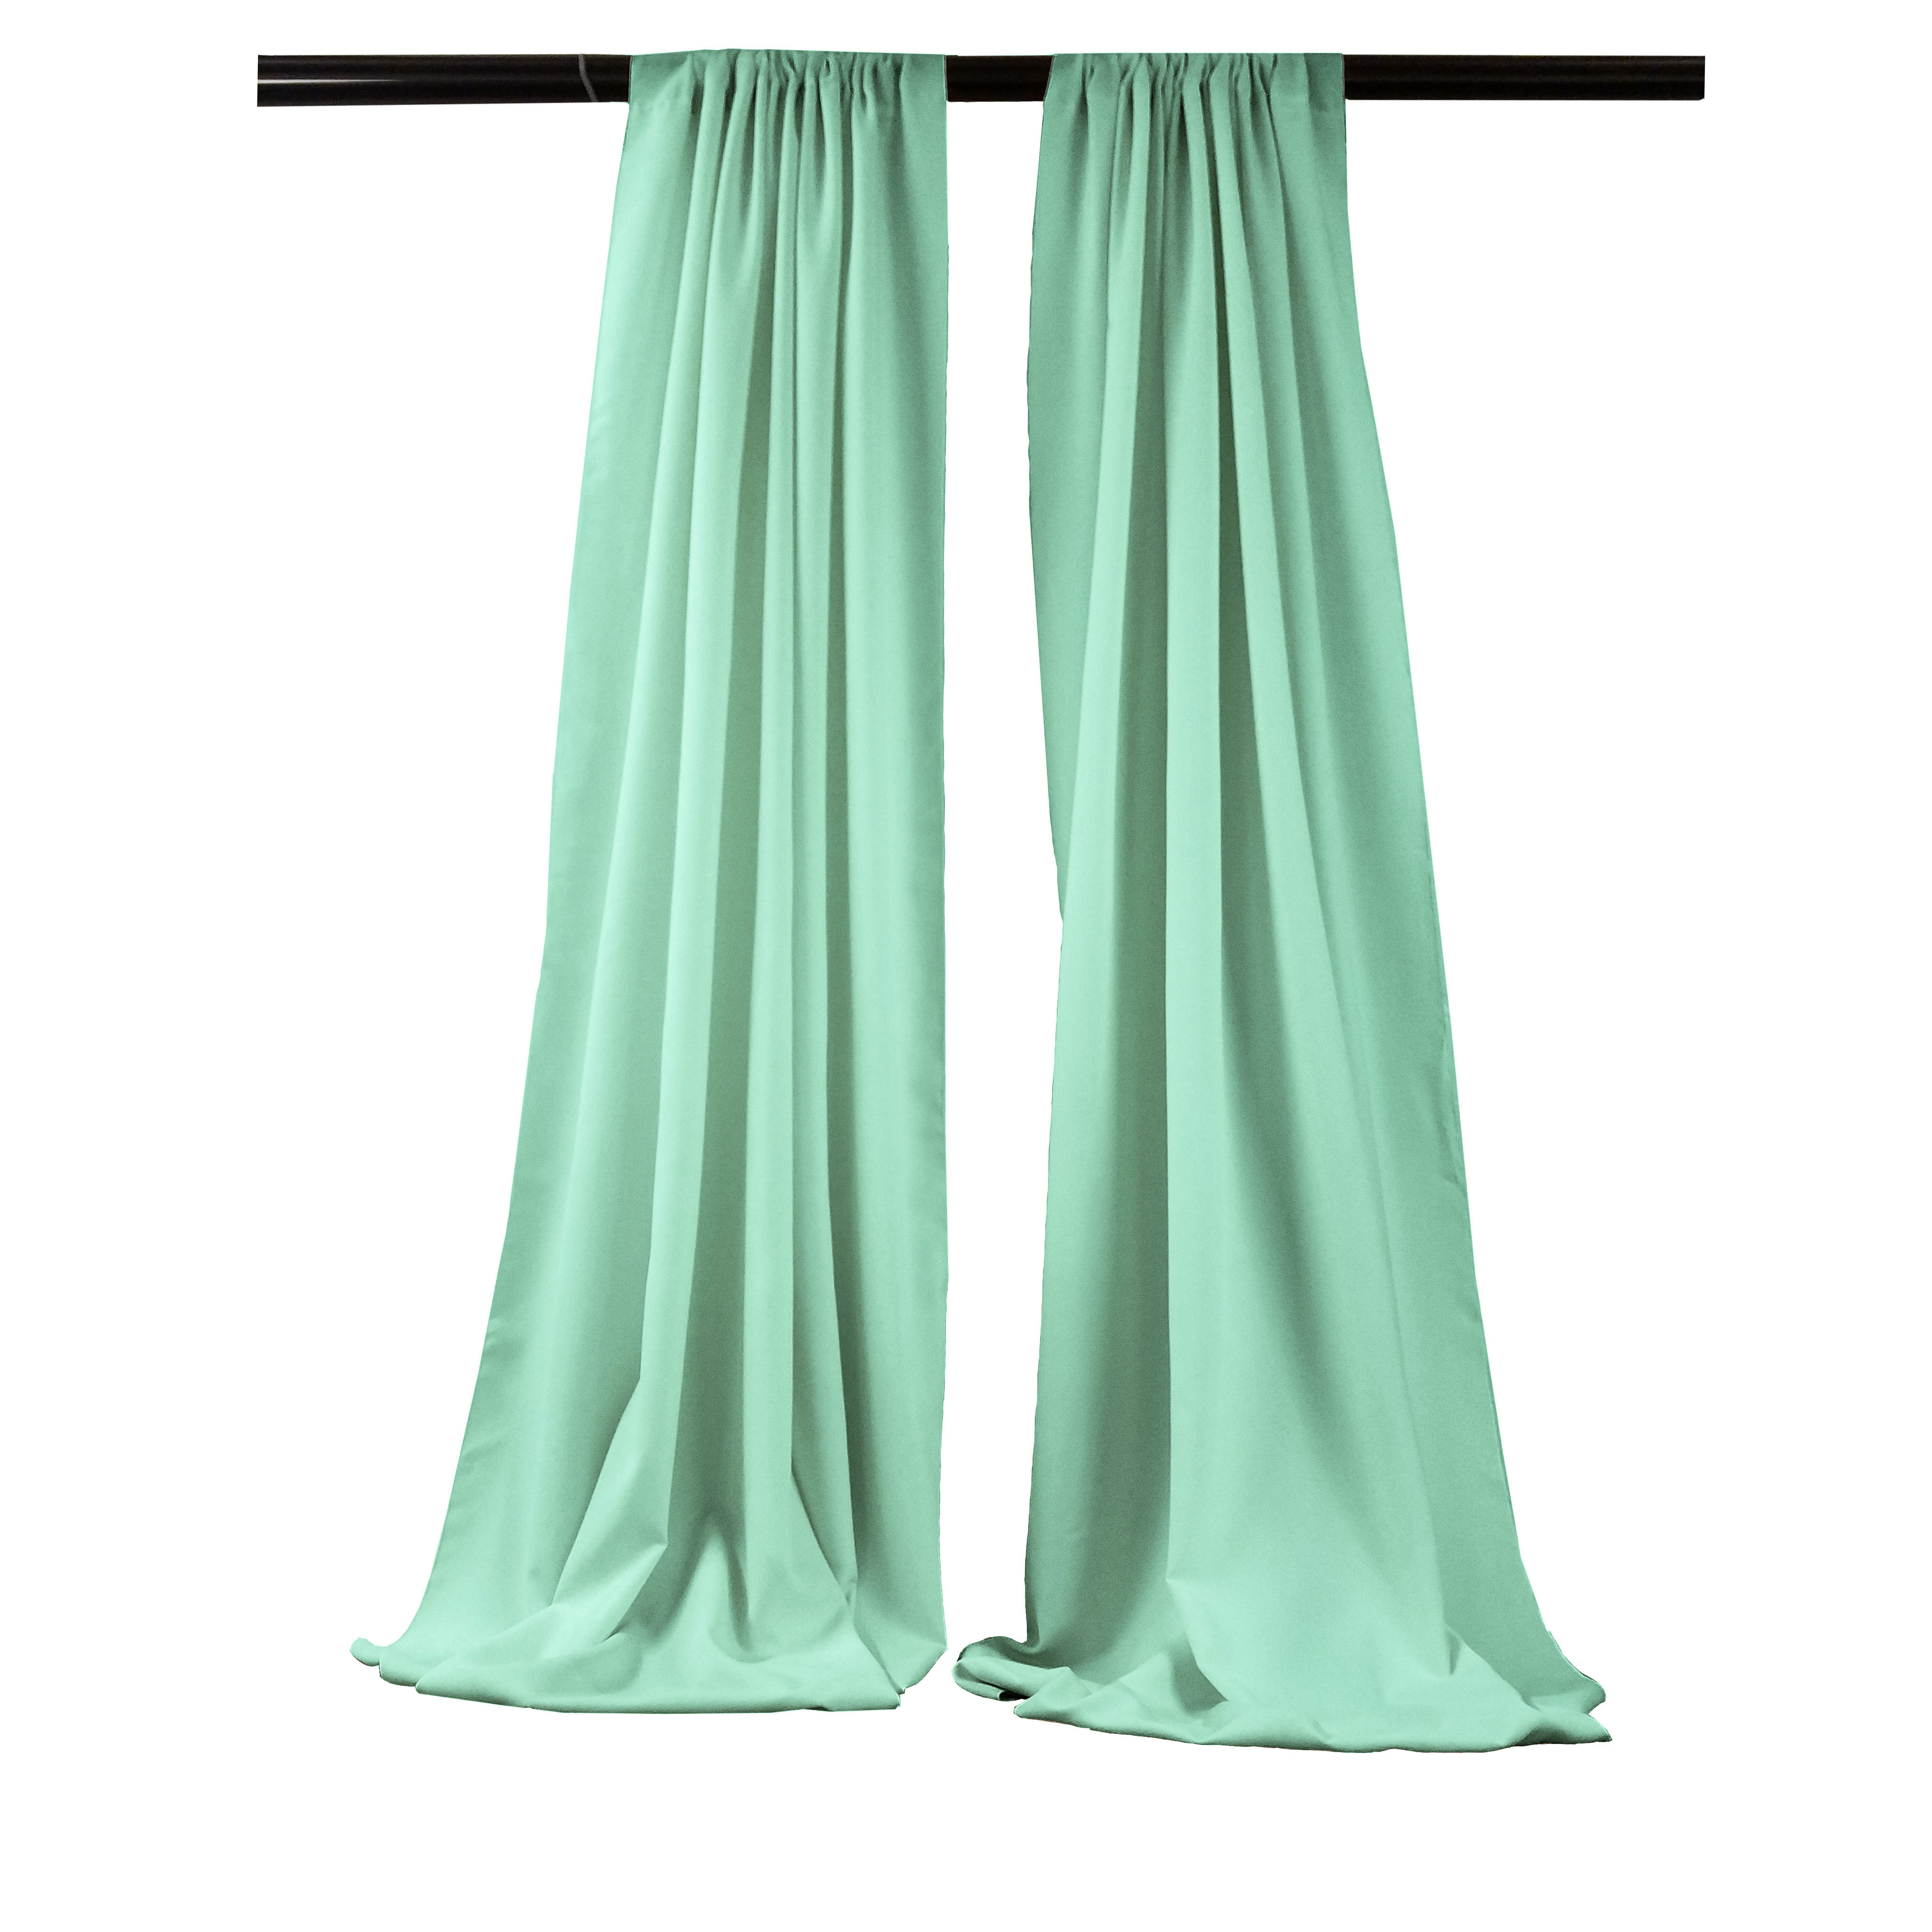 LA Linen Pack-2 Polyester Poplin Backdrop Drape 96-Inch Wide by 58-Inch High, Mint